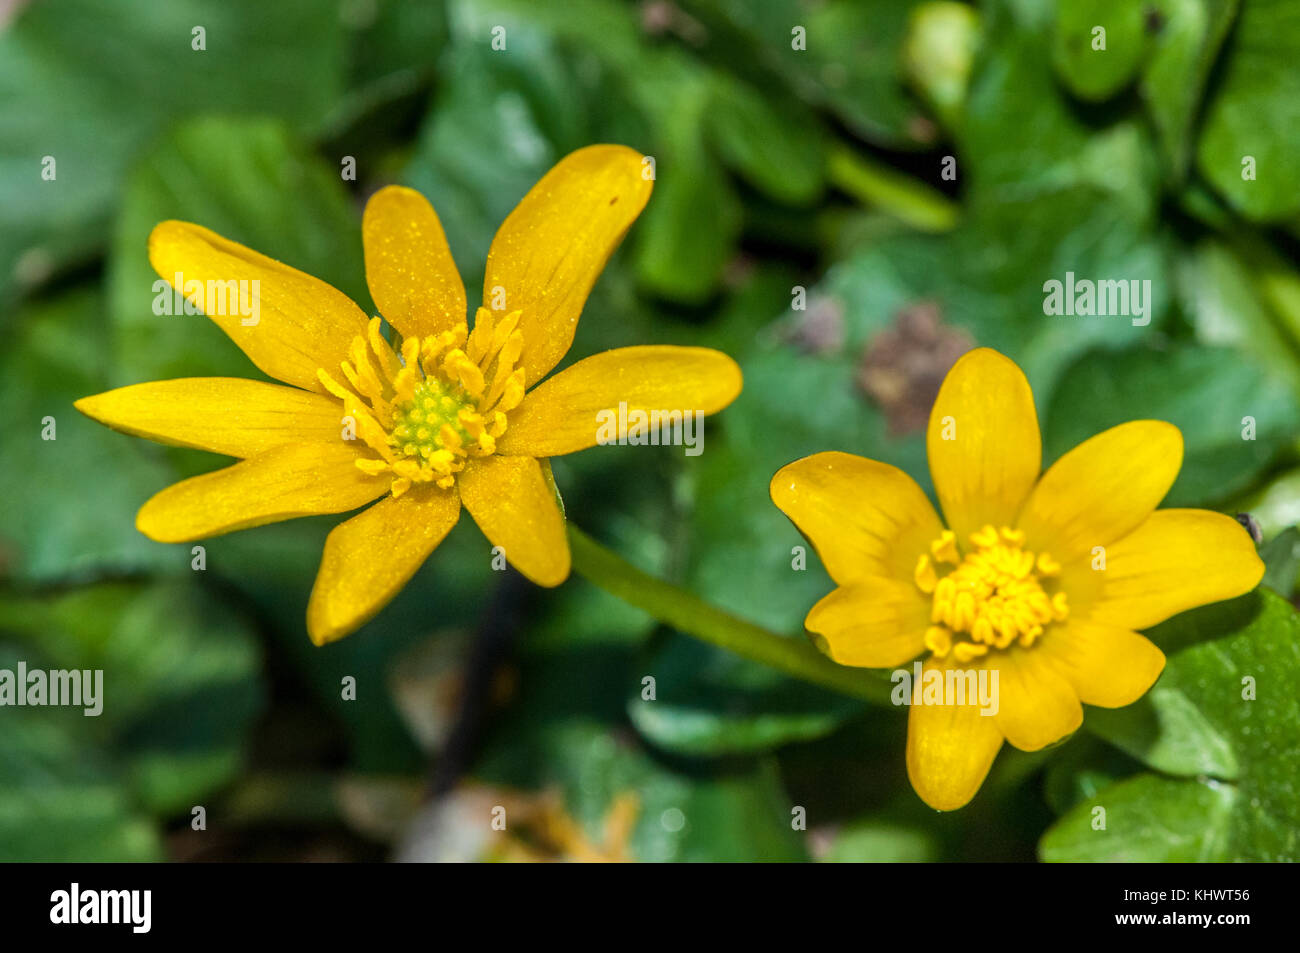 close-up view o a lesser celandine (Ranunculus ficaria) Stock Photo